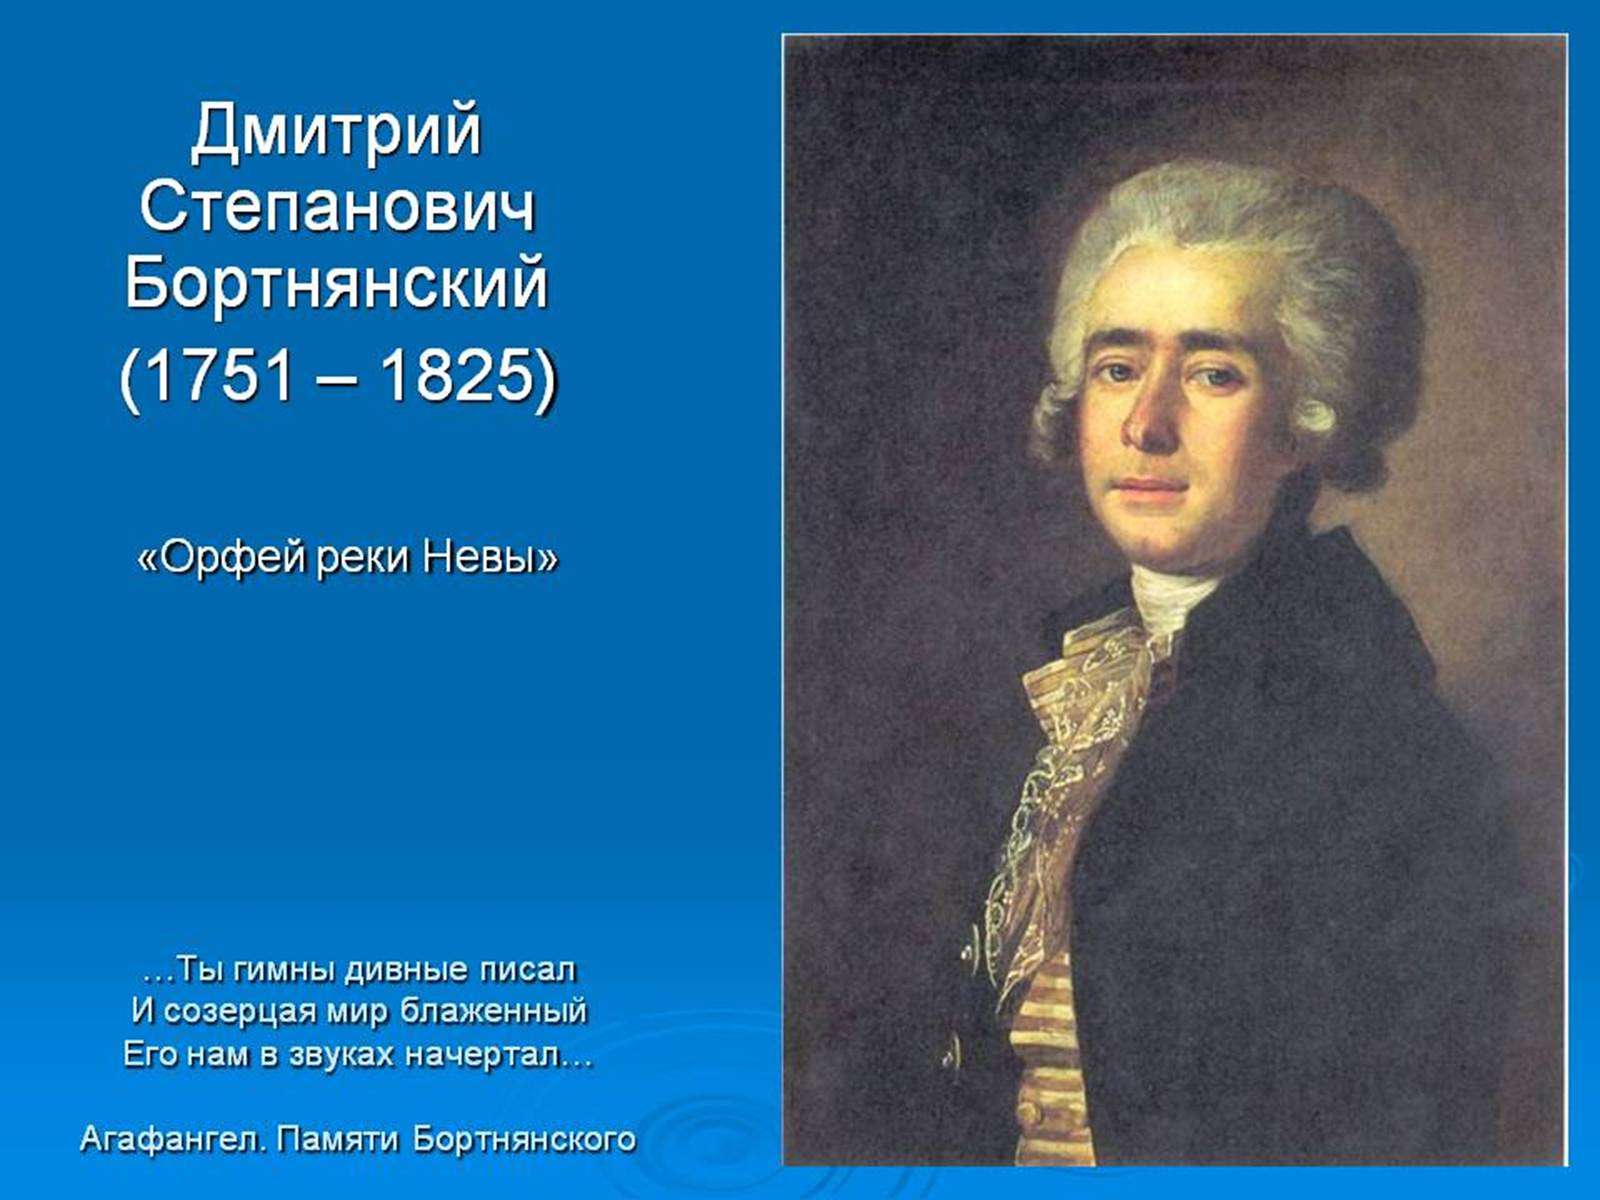 Бортнянский композитор духовная музыка. Дмитрия Степановича Бортнянского (1751—1825).